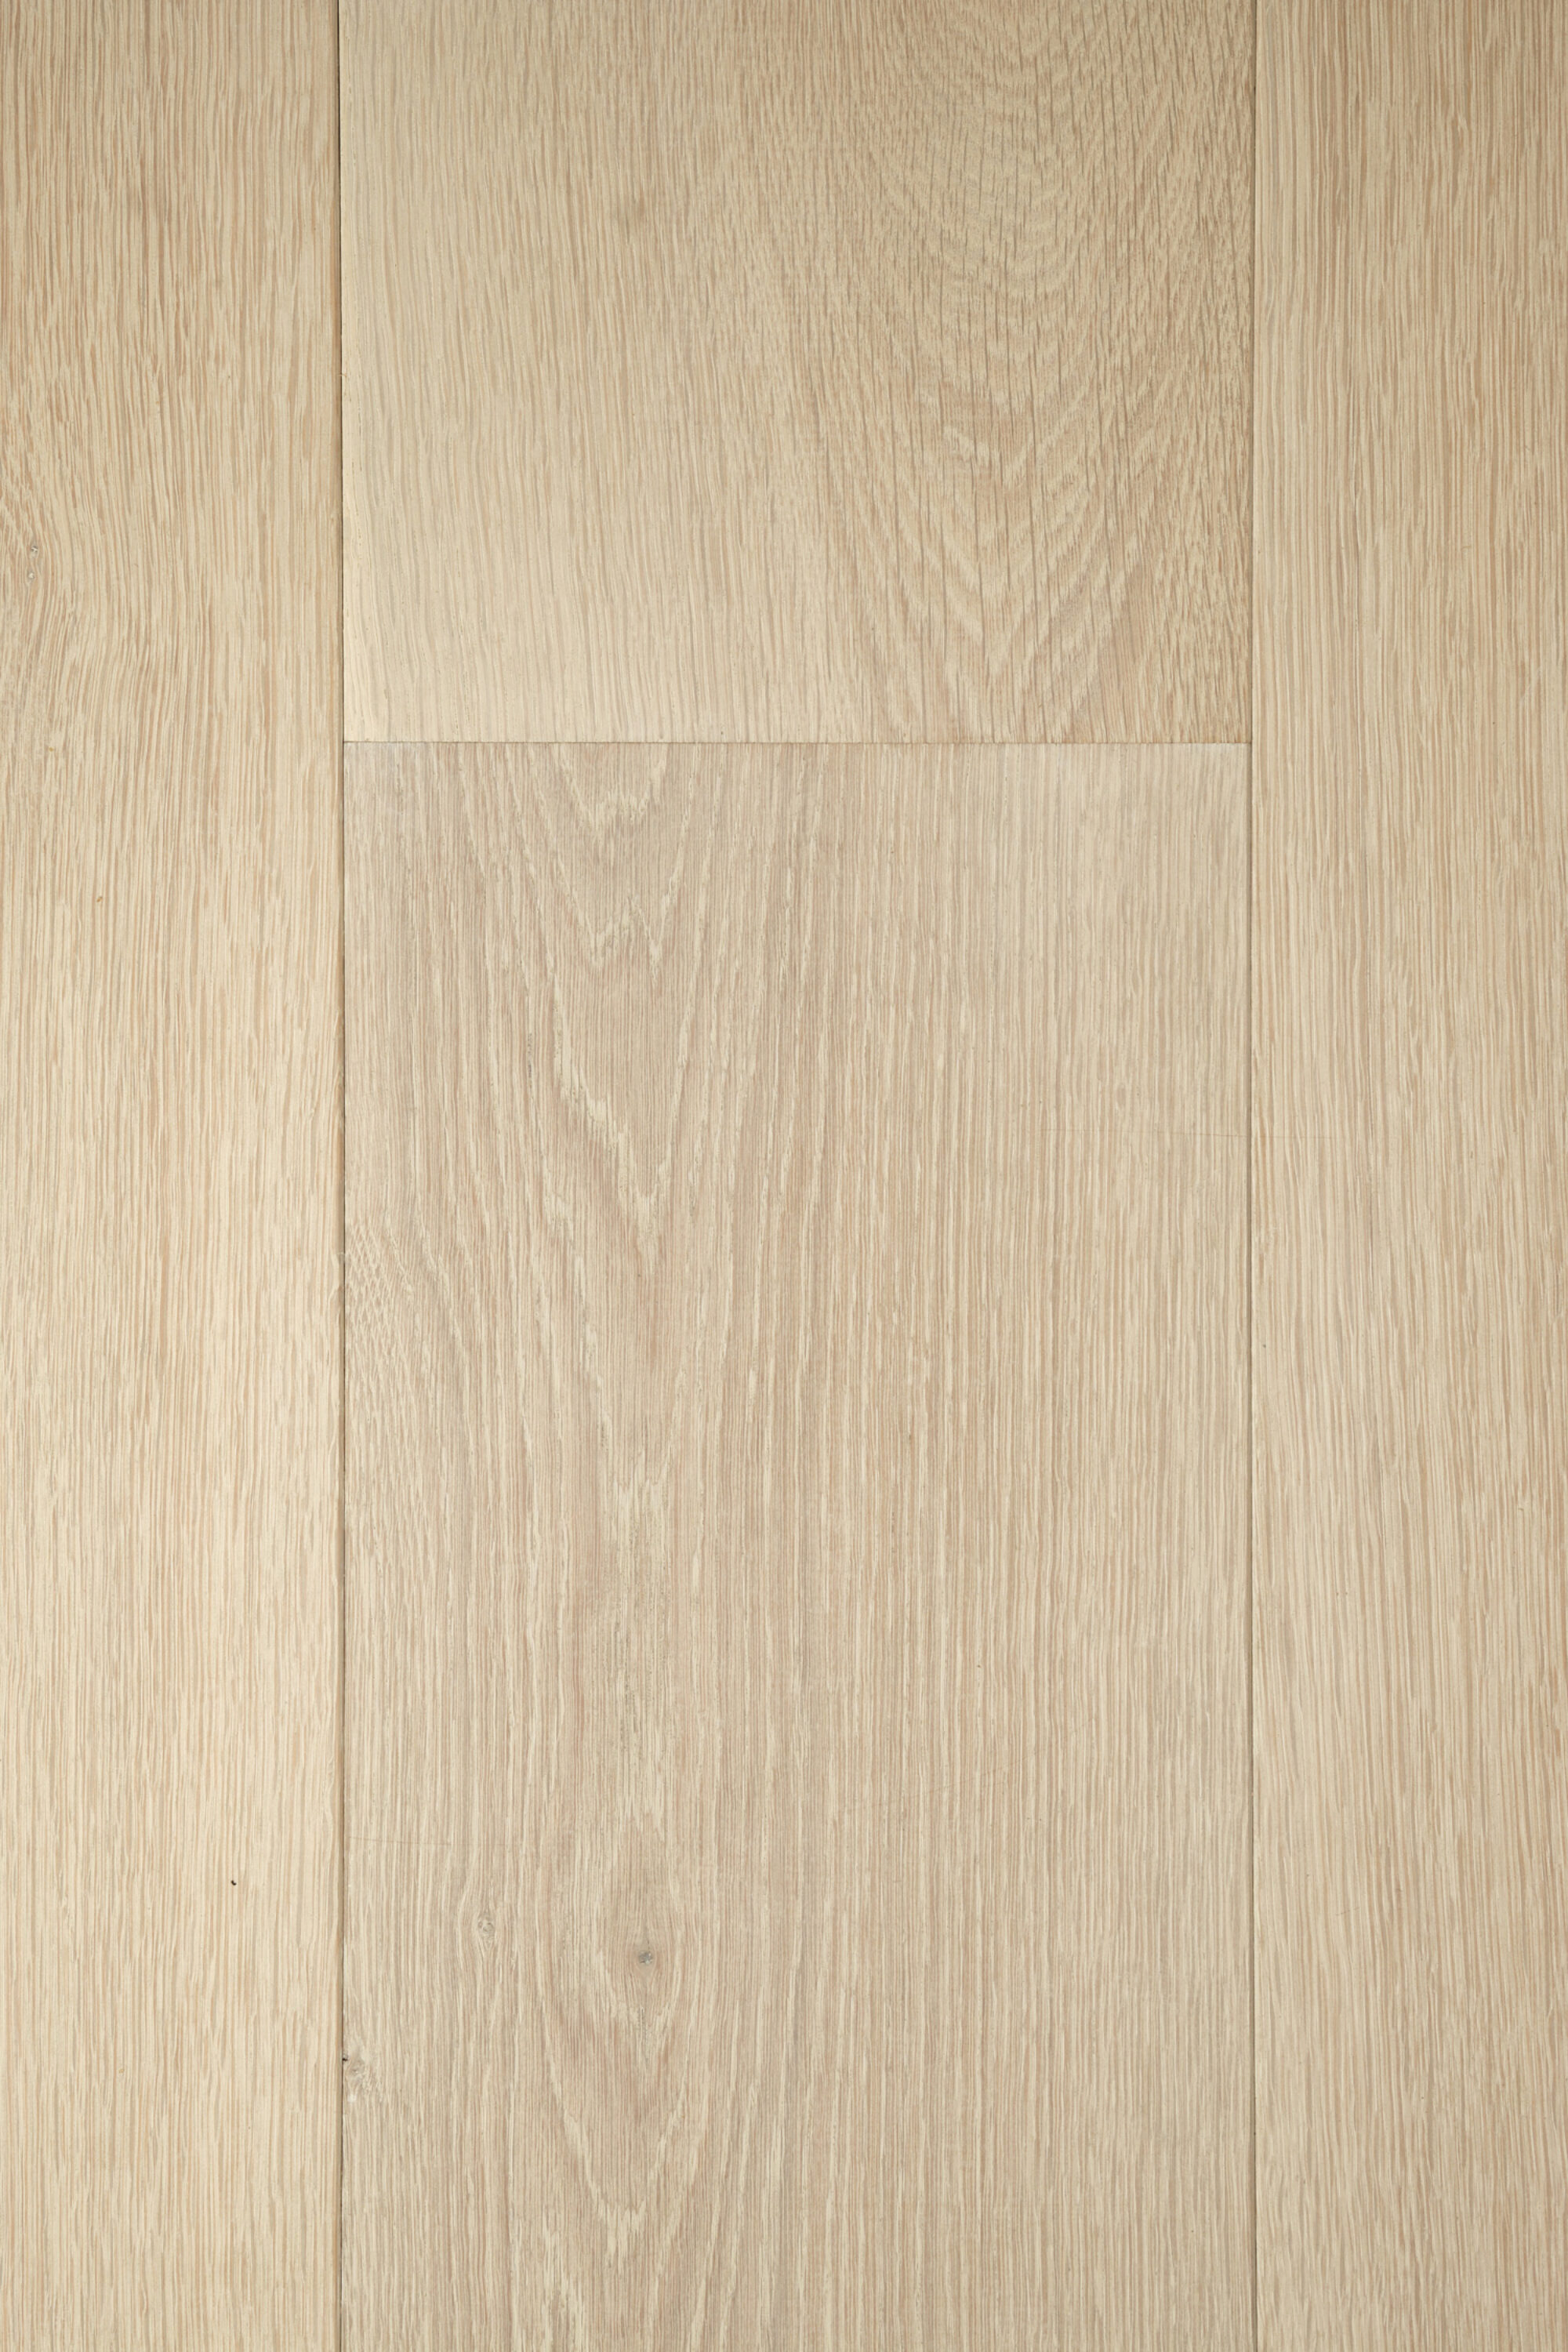 landmark ascott plank light oak flooring